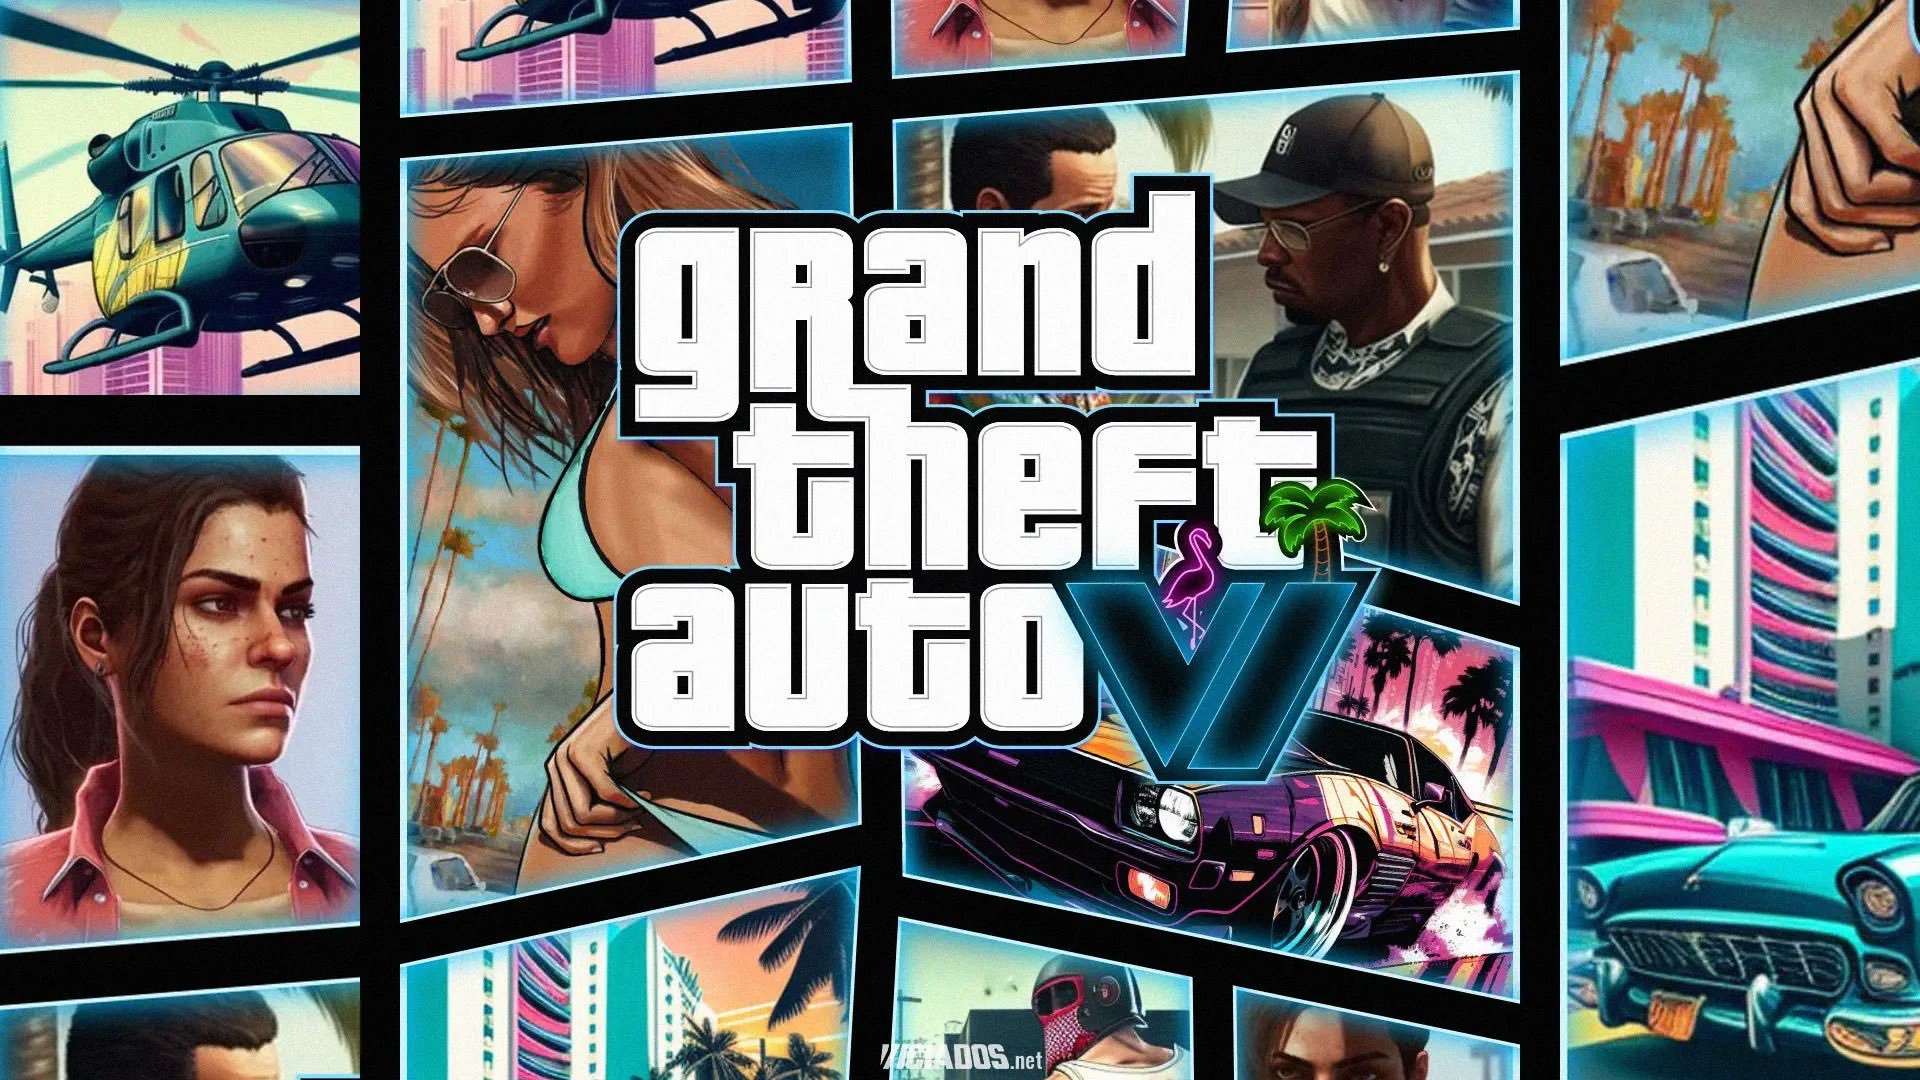 Former Rockstar Dev Wants GTA 6 To Be 'Smaller' - Insider Gaming